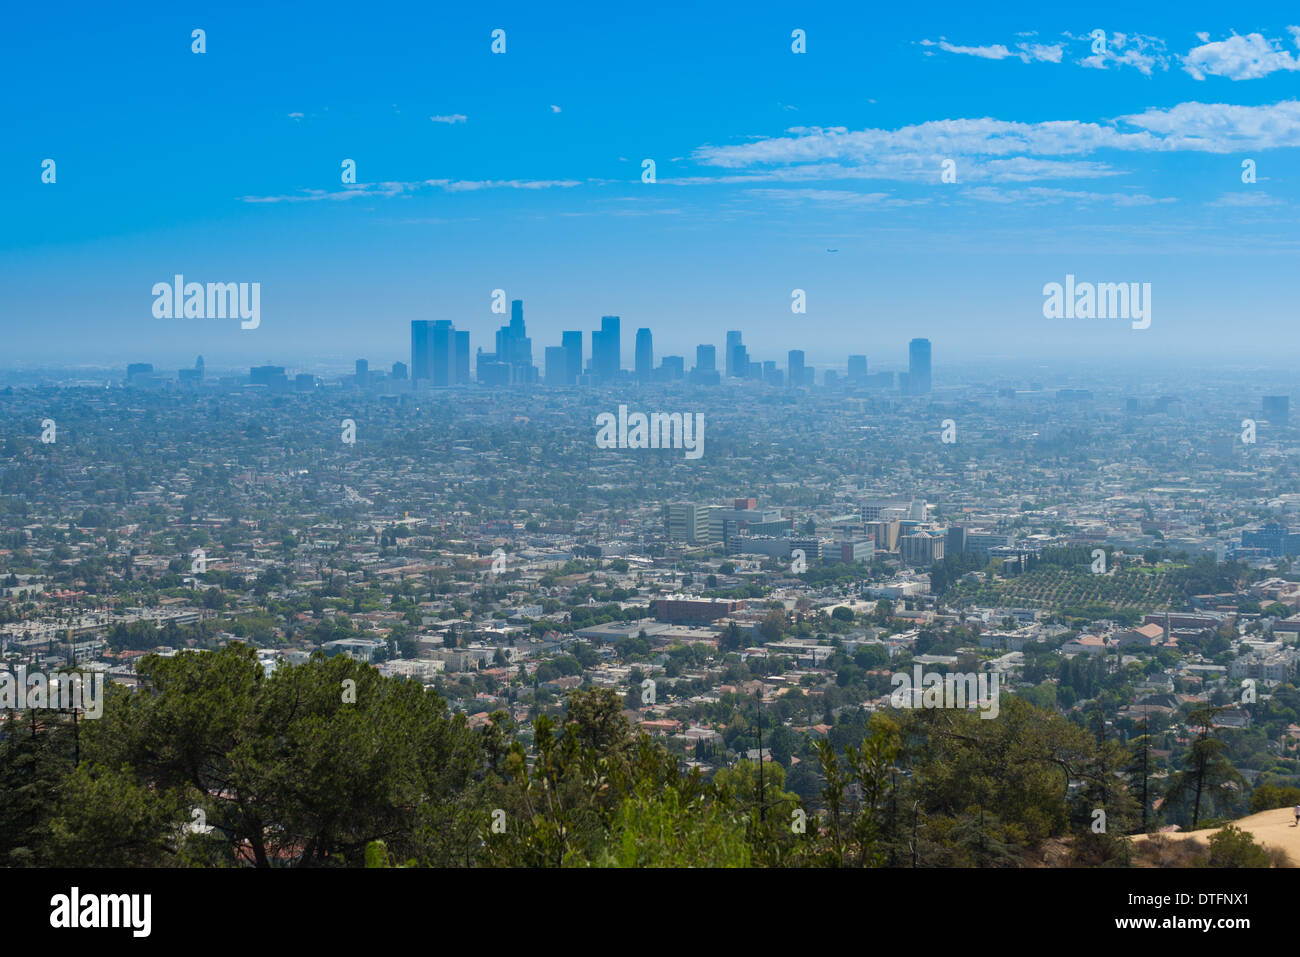 El horizonte de Los Angeles desde las colinas de Hollywood y el Observatorio Griffith Foto de stock